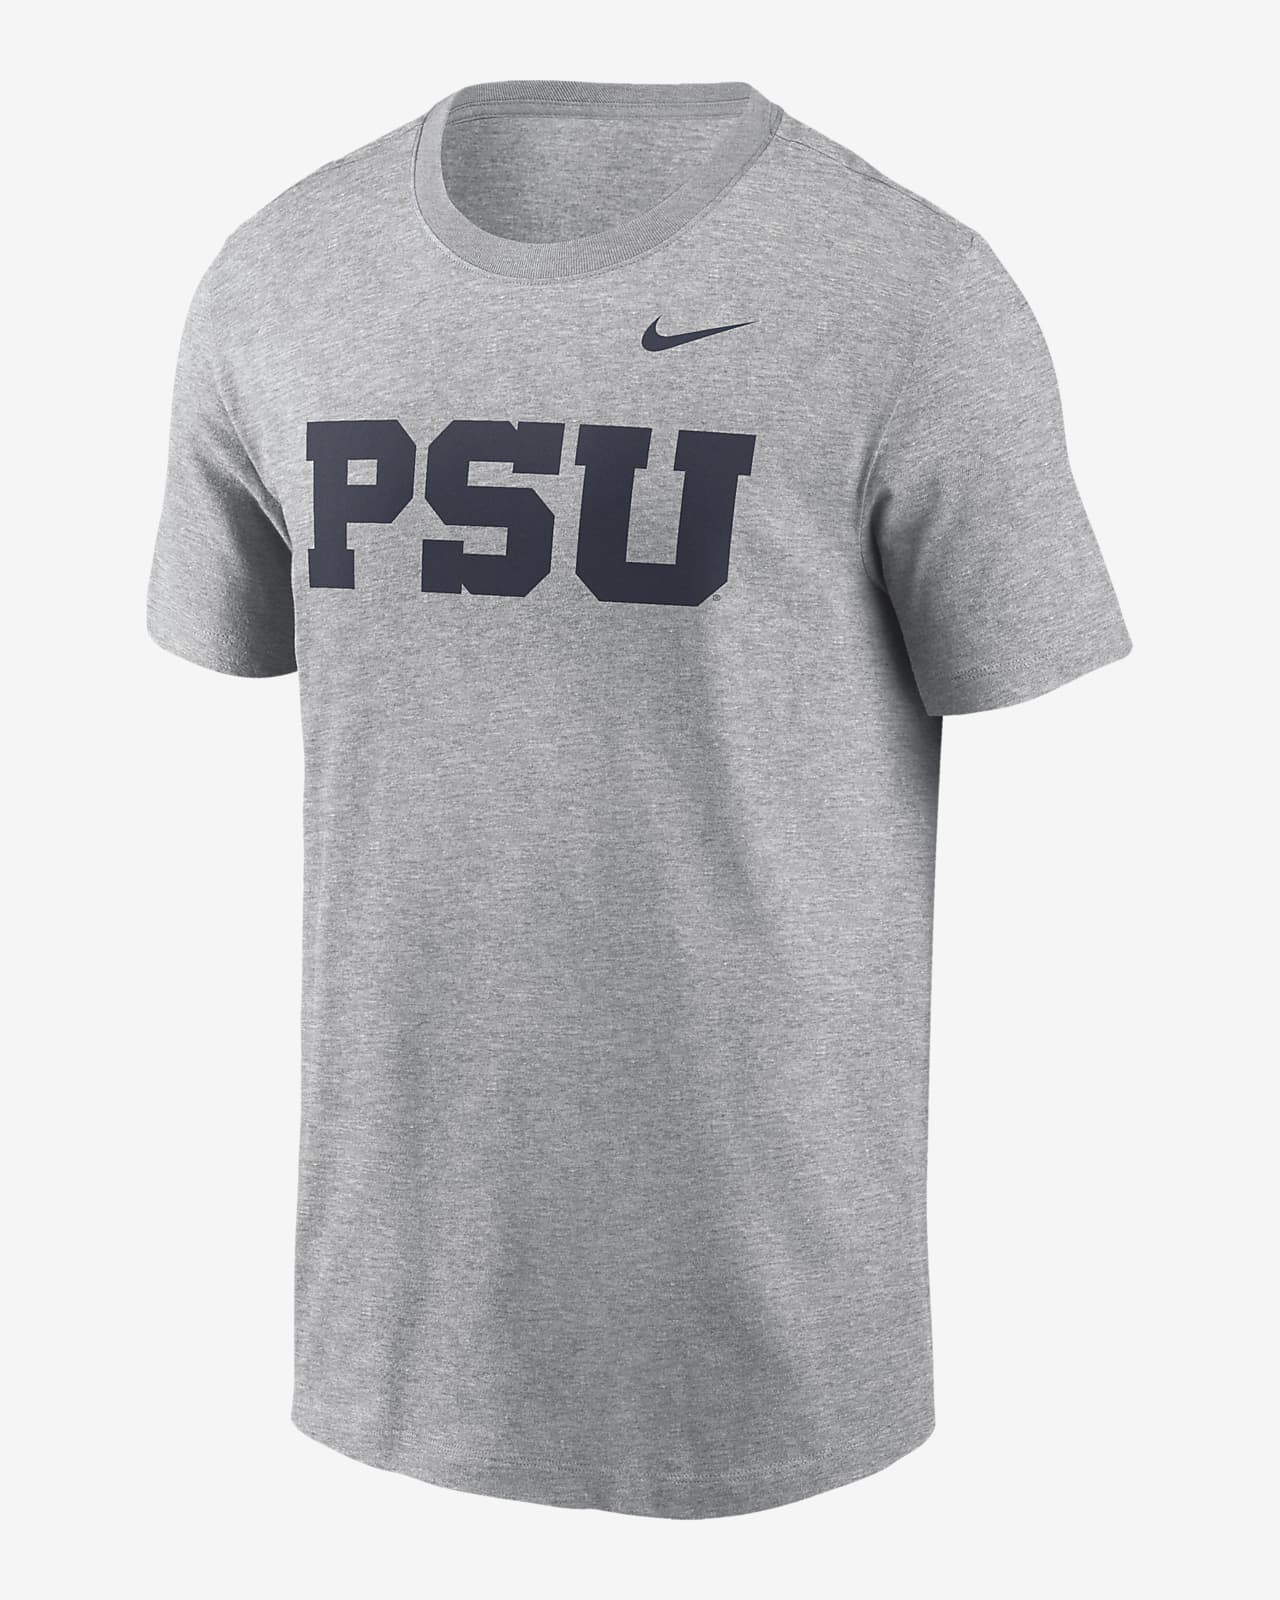 Penn State Nittany Lions Primetime Evergreen Alternate Logo Men's Nike College T-Shirt